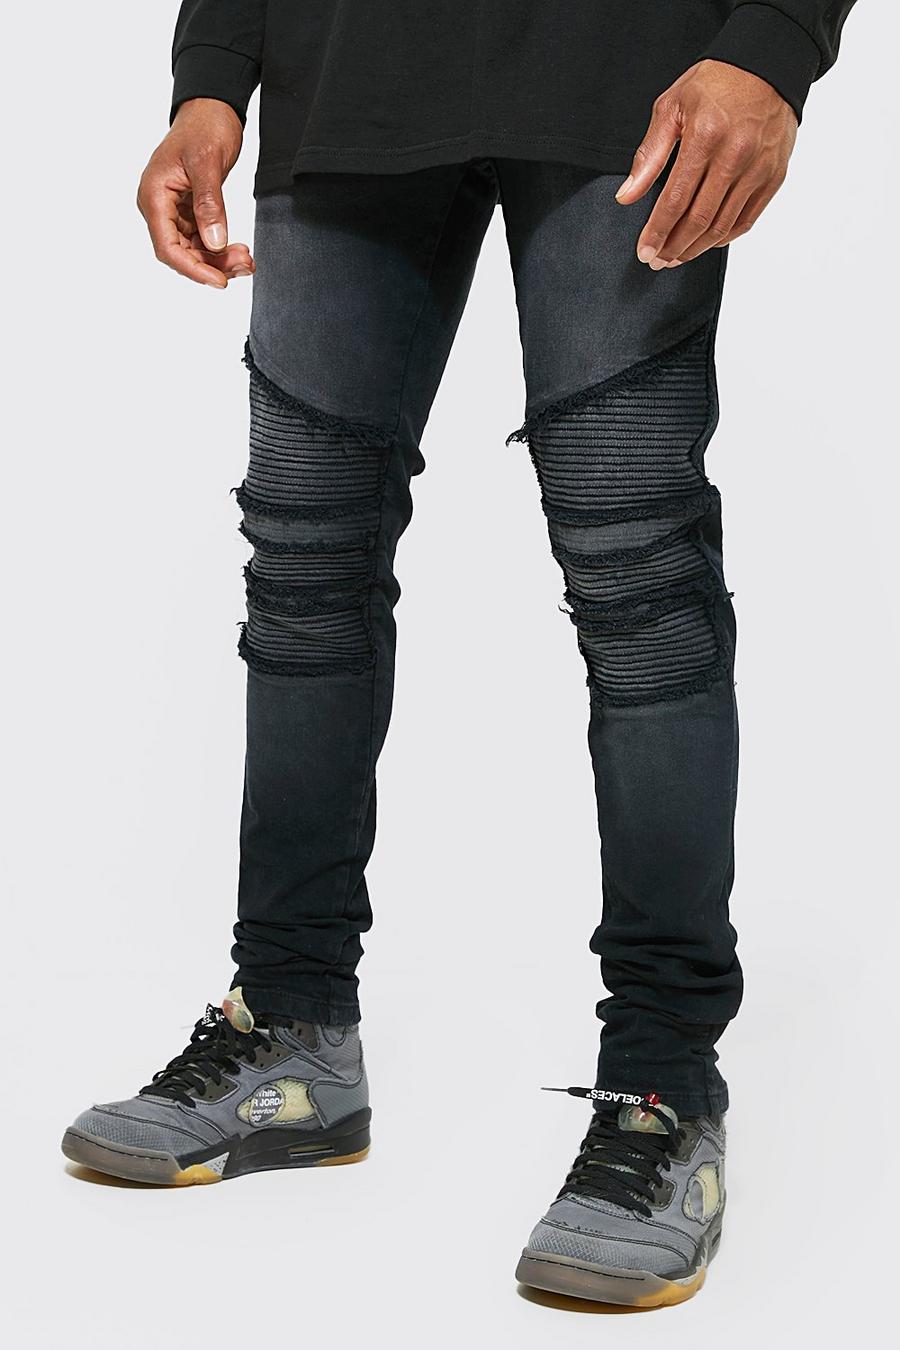 Jeans stile Biker Skinny Fit con smagliature, zip e pieghe sul fondo, Washed black